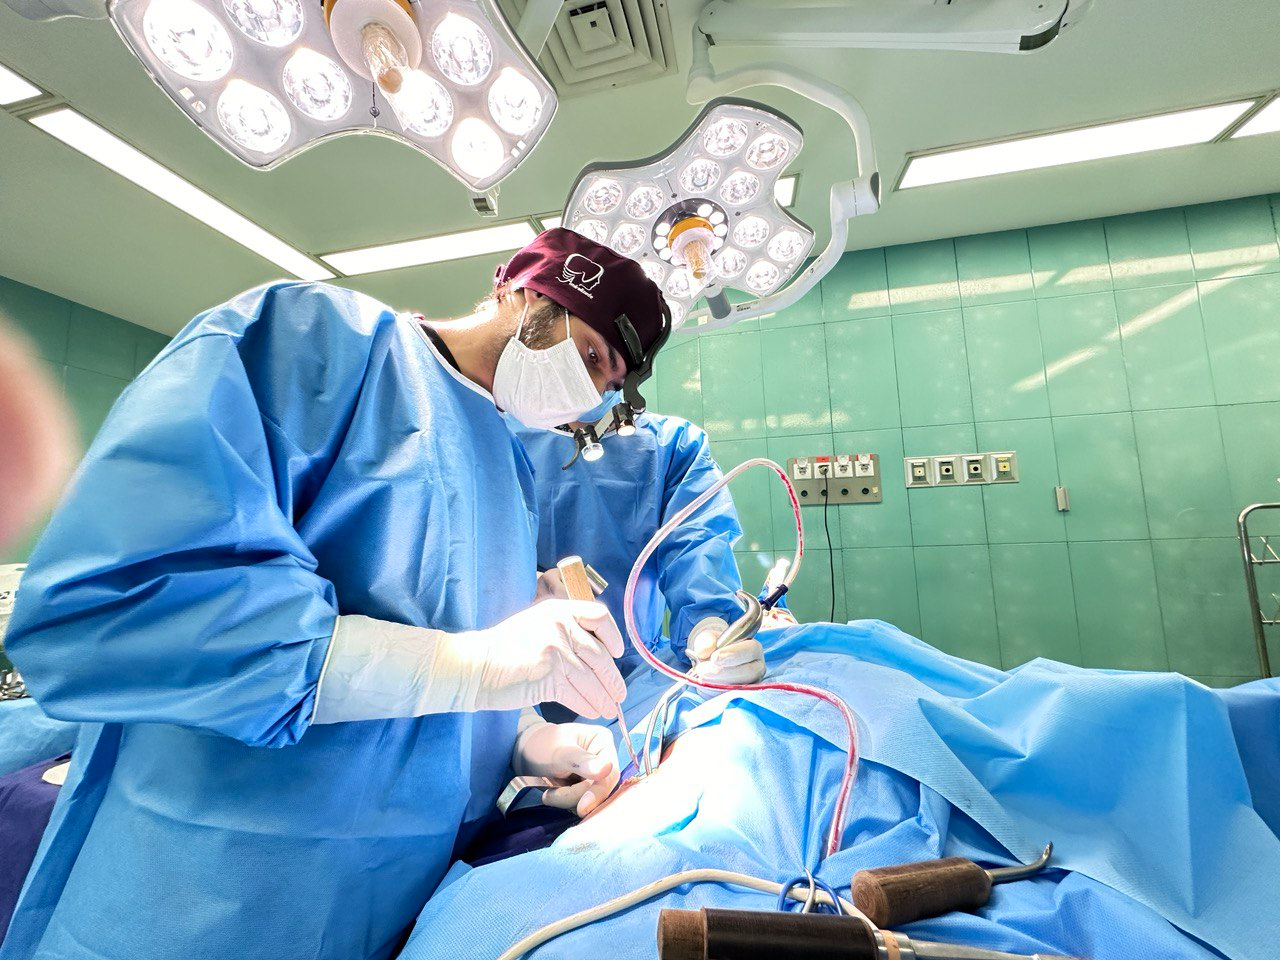 انواع خدمات جراحی اقساطی در مطب دکتر امیر علیزاده